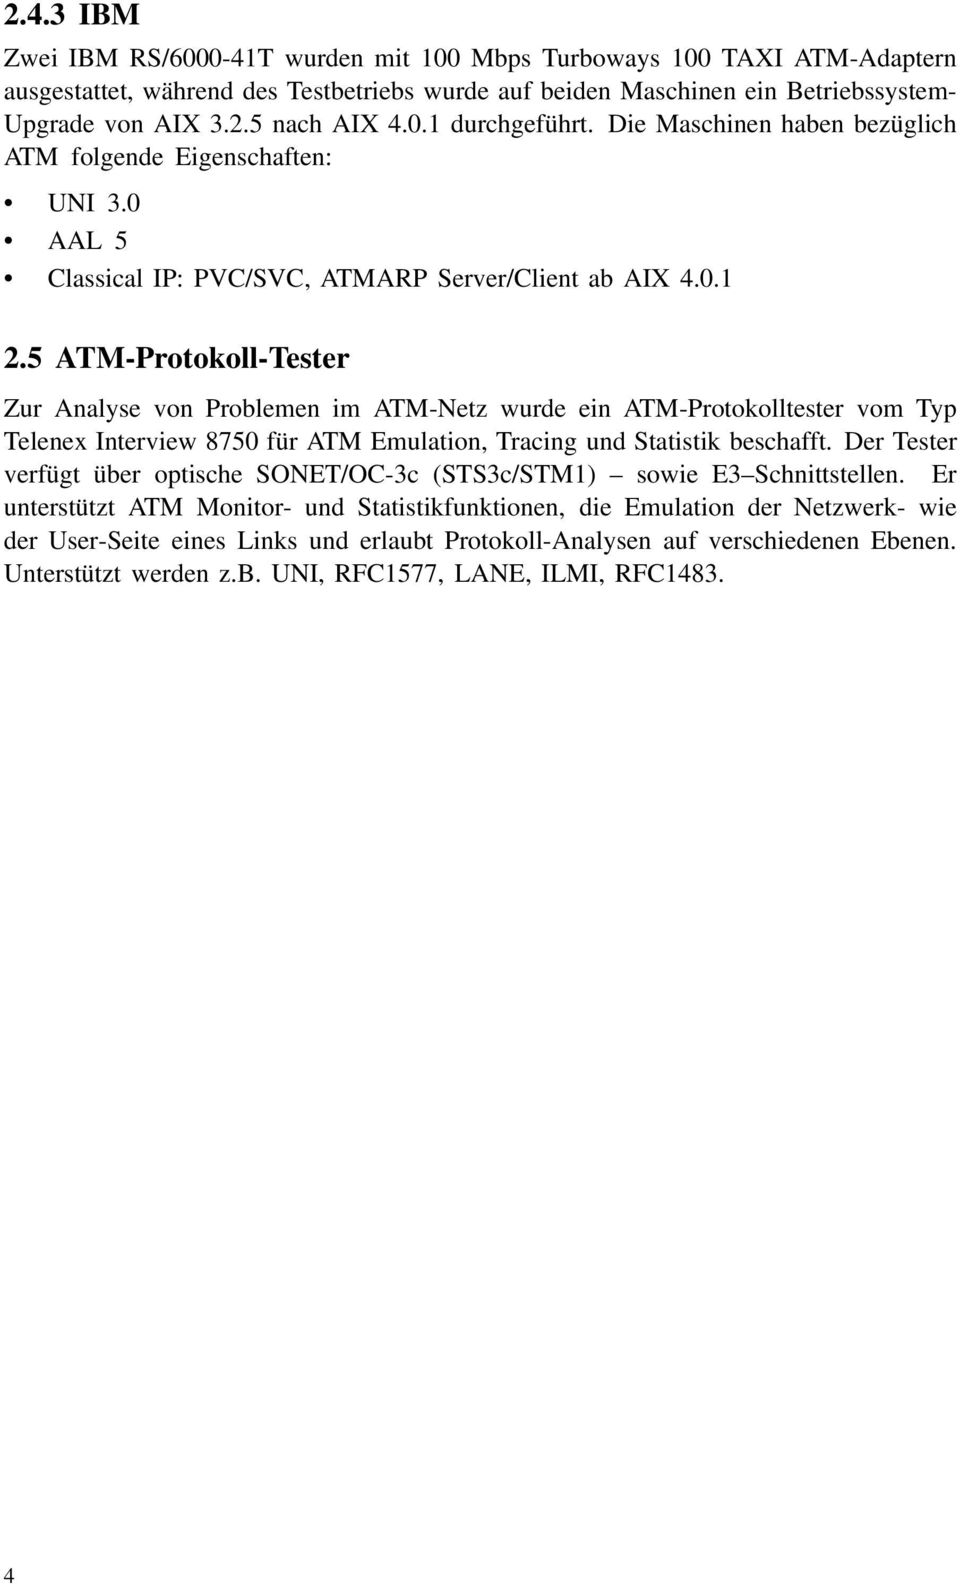 5 ATM-Protokoll-Tester Zur Analyse von Problemen im ATM-Netz wurde ein ATM-Protokolltester vom Typ Telenex Interview 8750 für ATM Emulation, Tracing und Statistik beschafft.